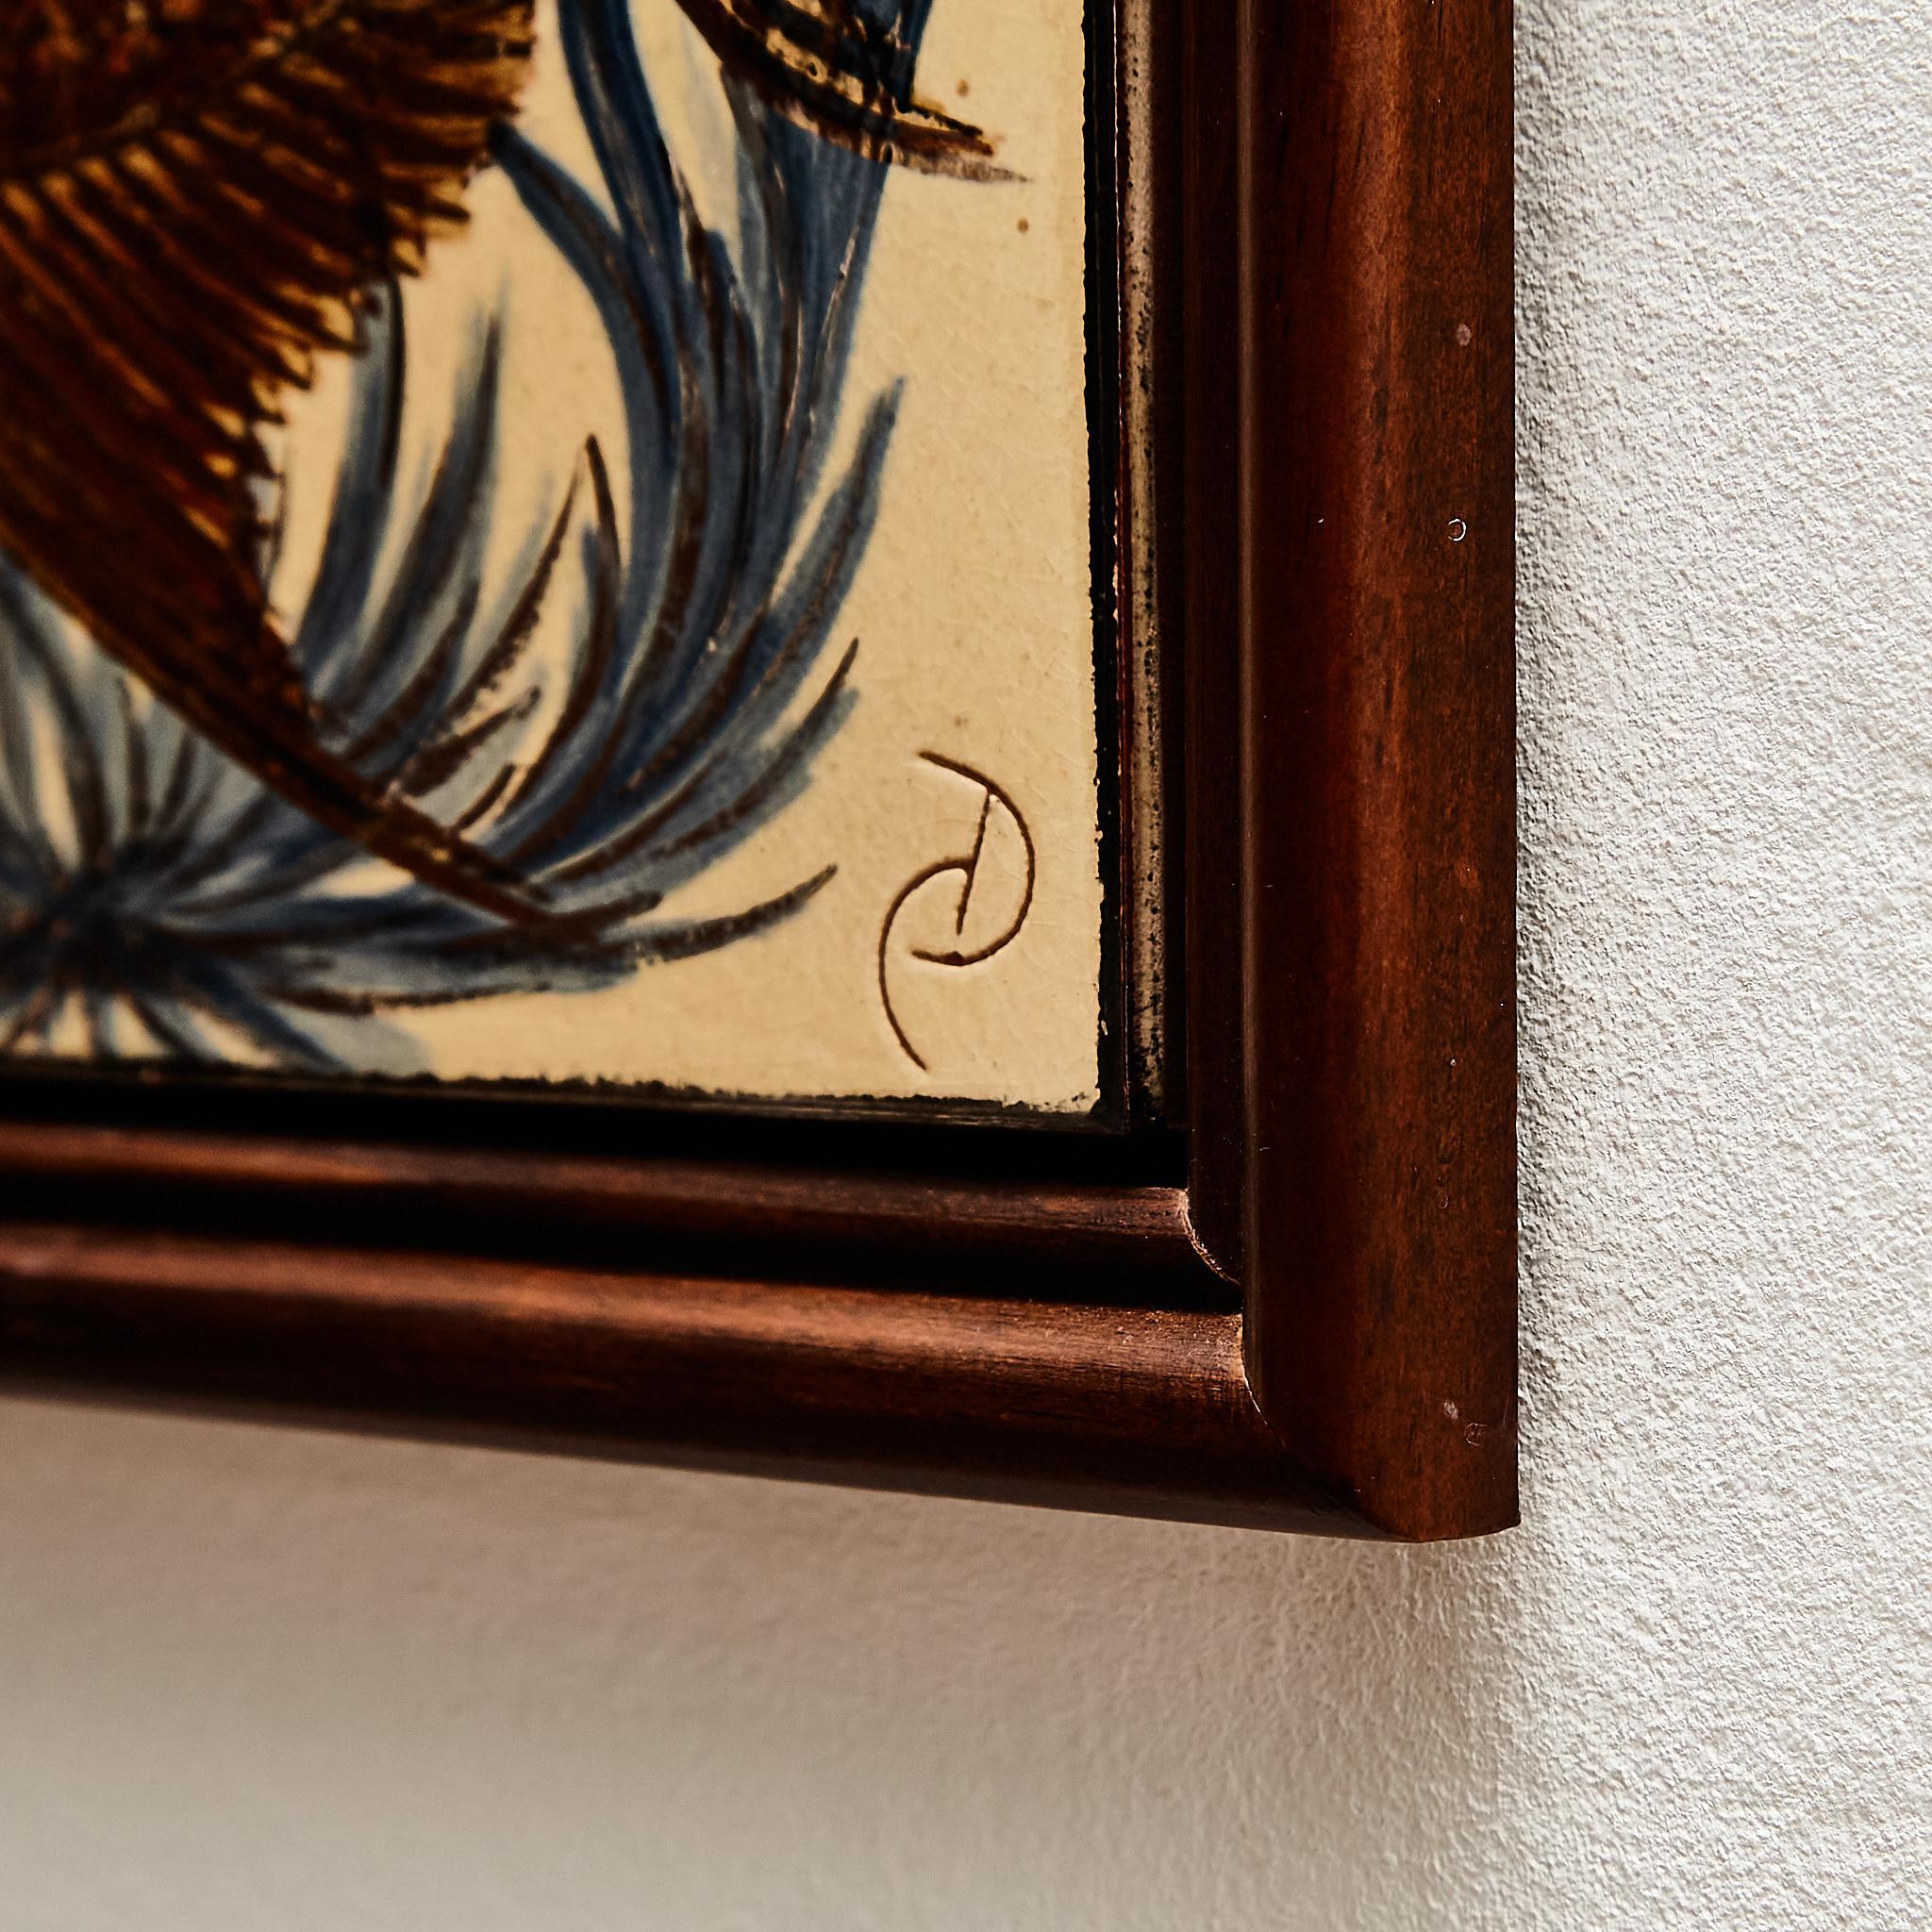 Keramisches, handbemaltes Kunstwerk mit einem Fischmotiv des katalanischen Künstlers Diaz Costa, um 1960.
Gerahmt. Unterschrieben.

Wichtige Informationen über die Farbe(n) der Produkte:
Tatsächliche Farben können variieren. Das liegt daran, dass